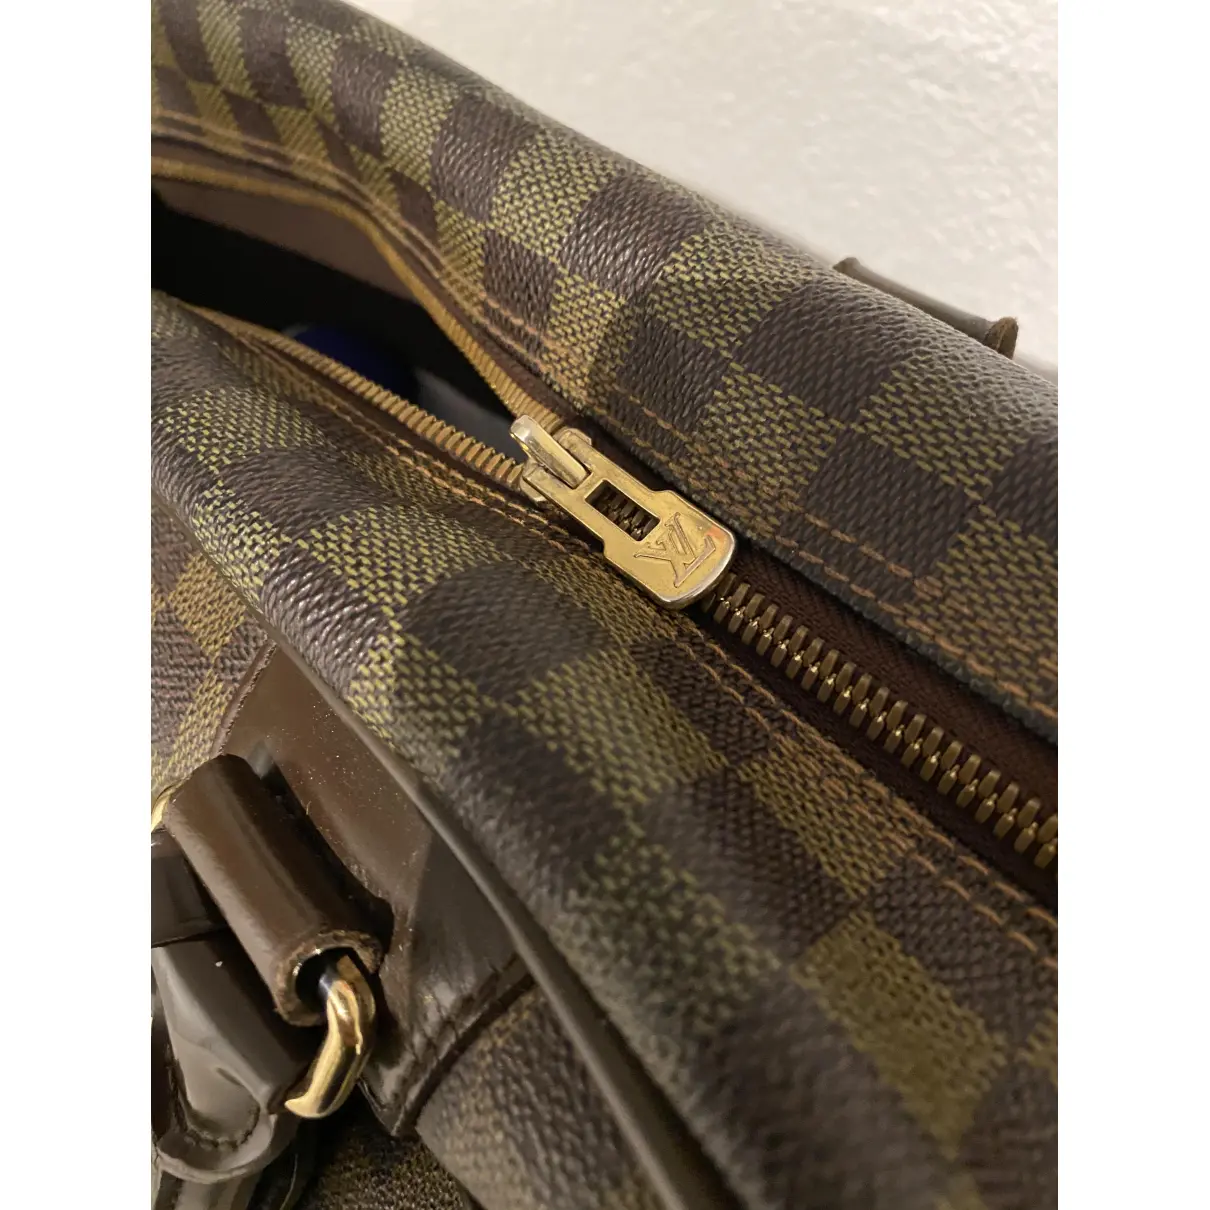 Buy Louis Vuitton Icare cloth bag online